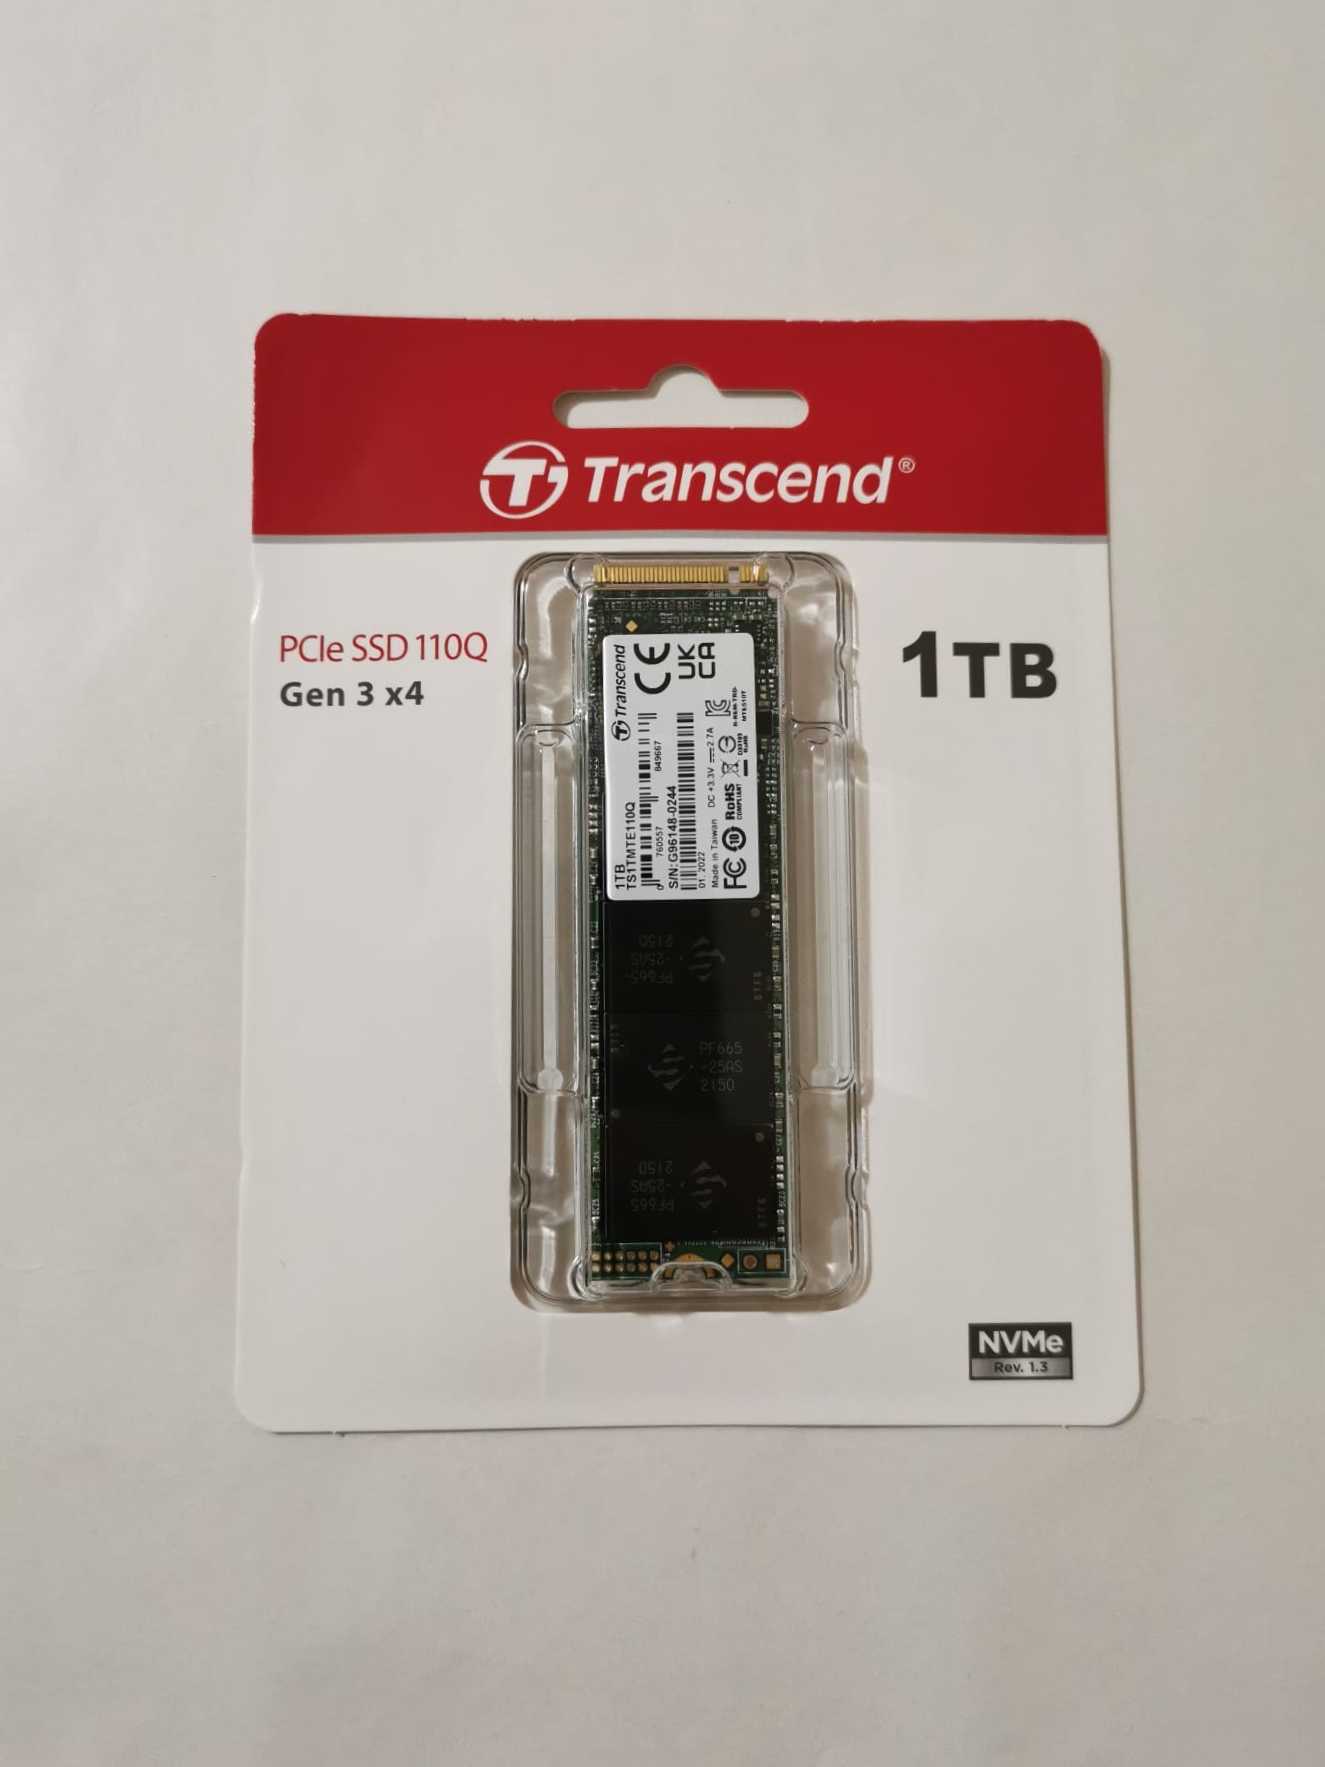 Madison matrix Afhængig Transcend MTE110Q SSD review: “old” but solid!